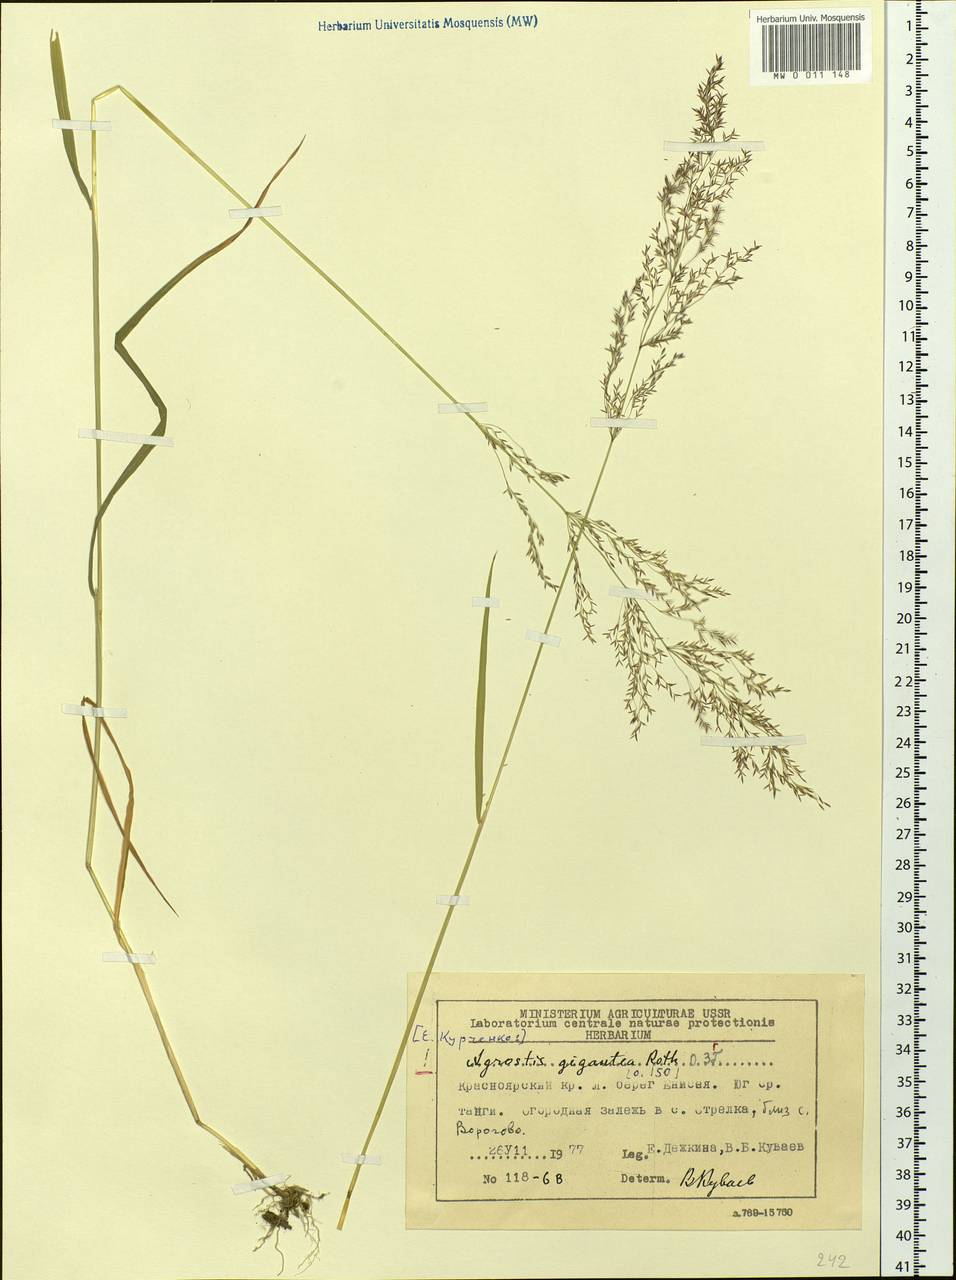 Agrostis gigantea Roth, Siberia, Central Siberia (S3) (Russia)